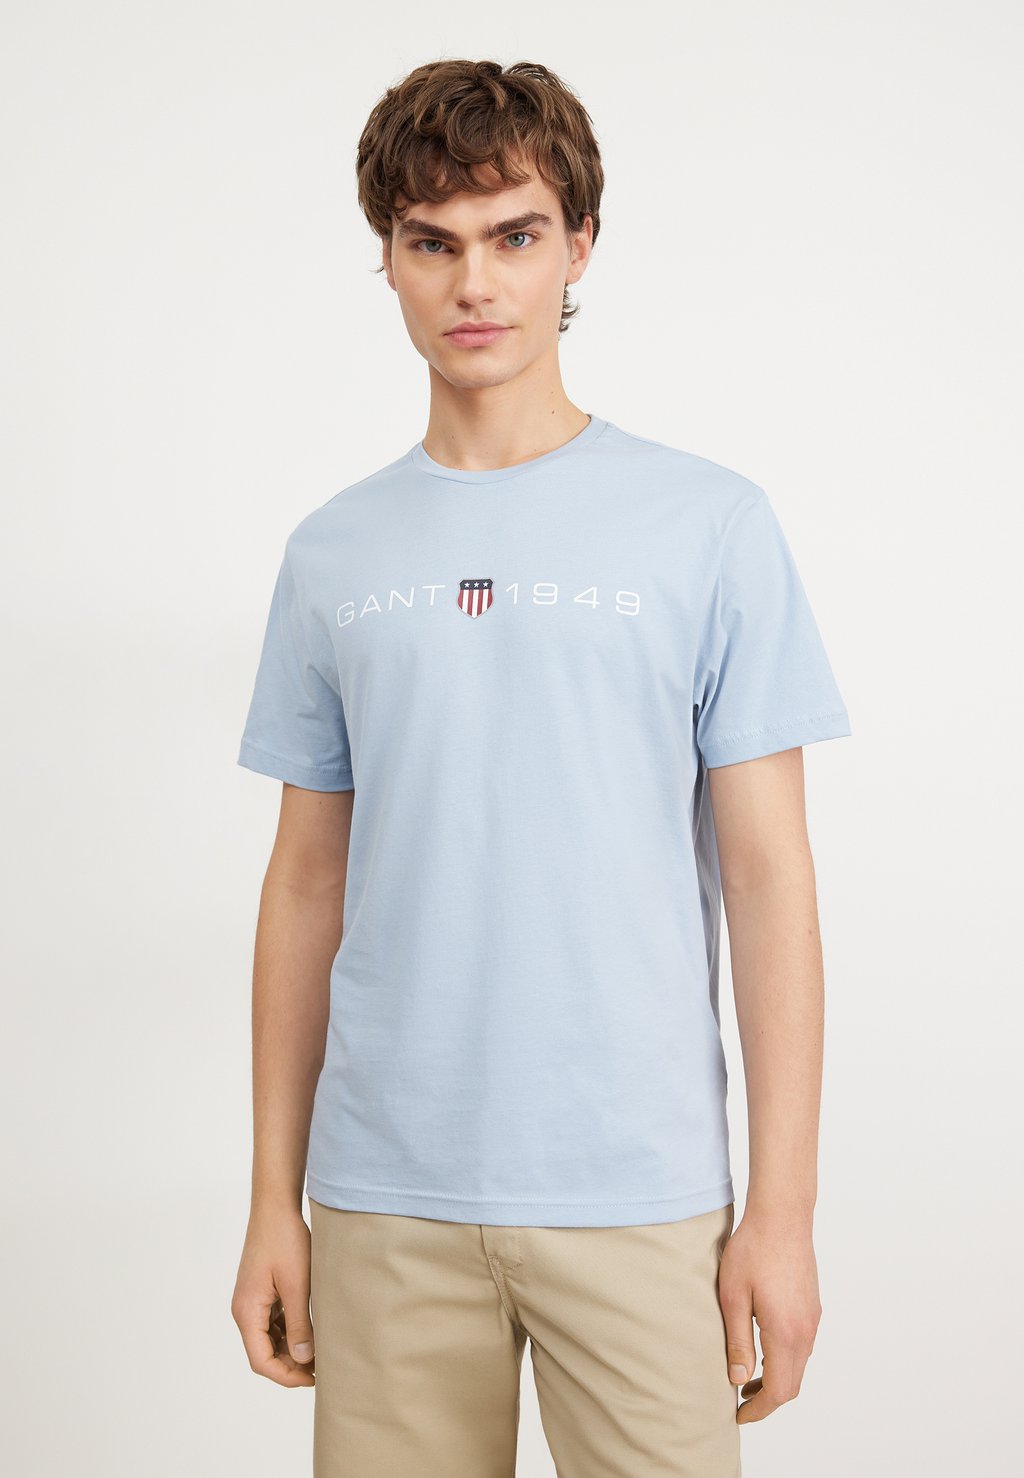 Футболка с принтом Graphic GANT, цвет marled blue футболка с принтом graphic gant цвет silky beige